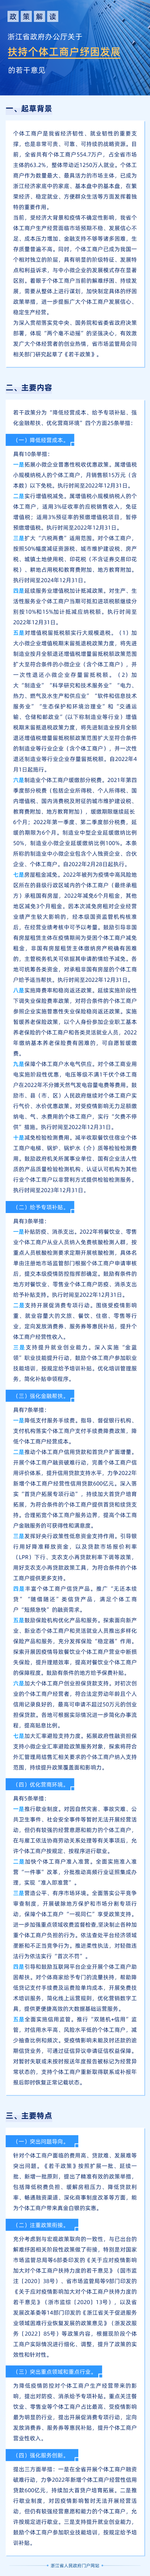 图解 | 浙江省人民政府办公厅关于扶持个体工商户纾困发展的若干意见